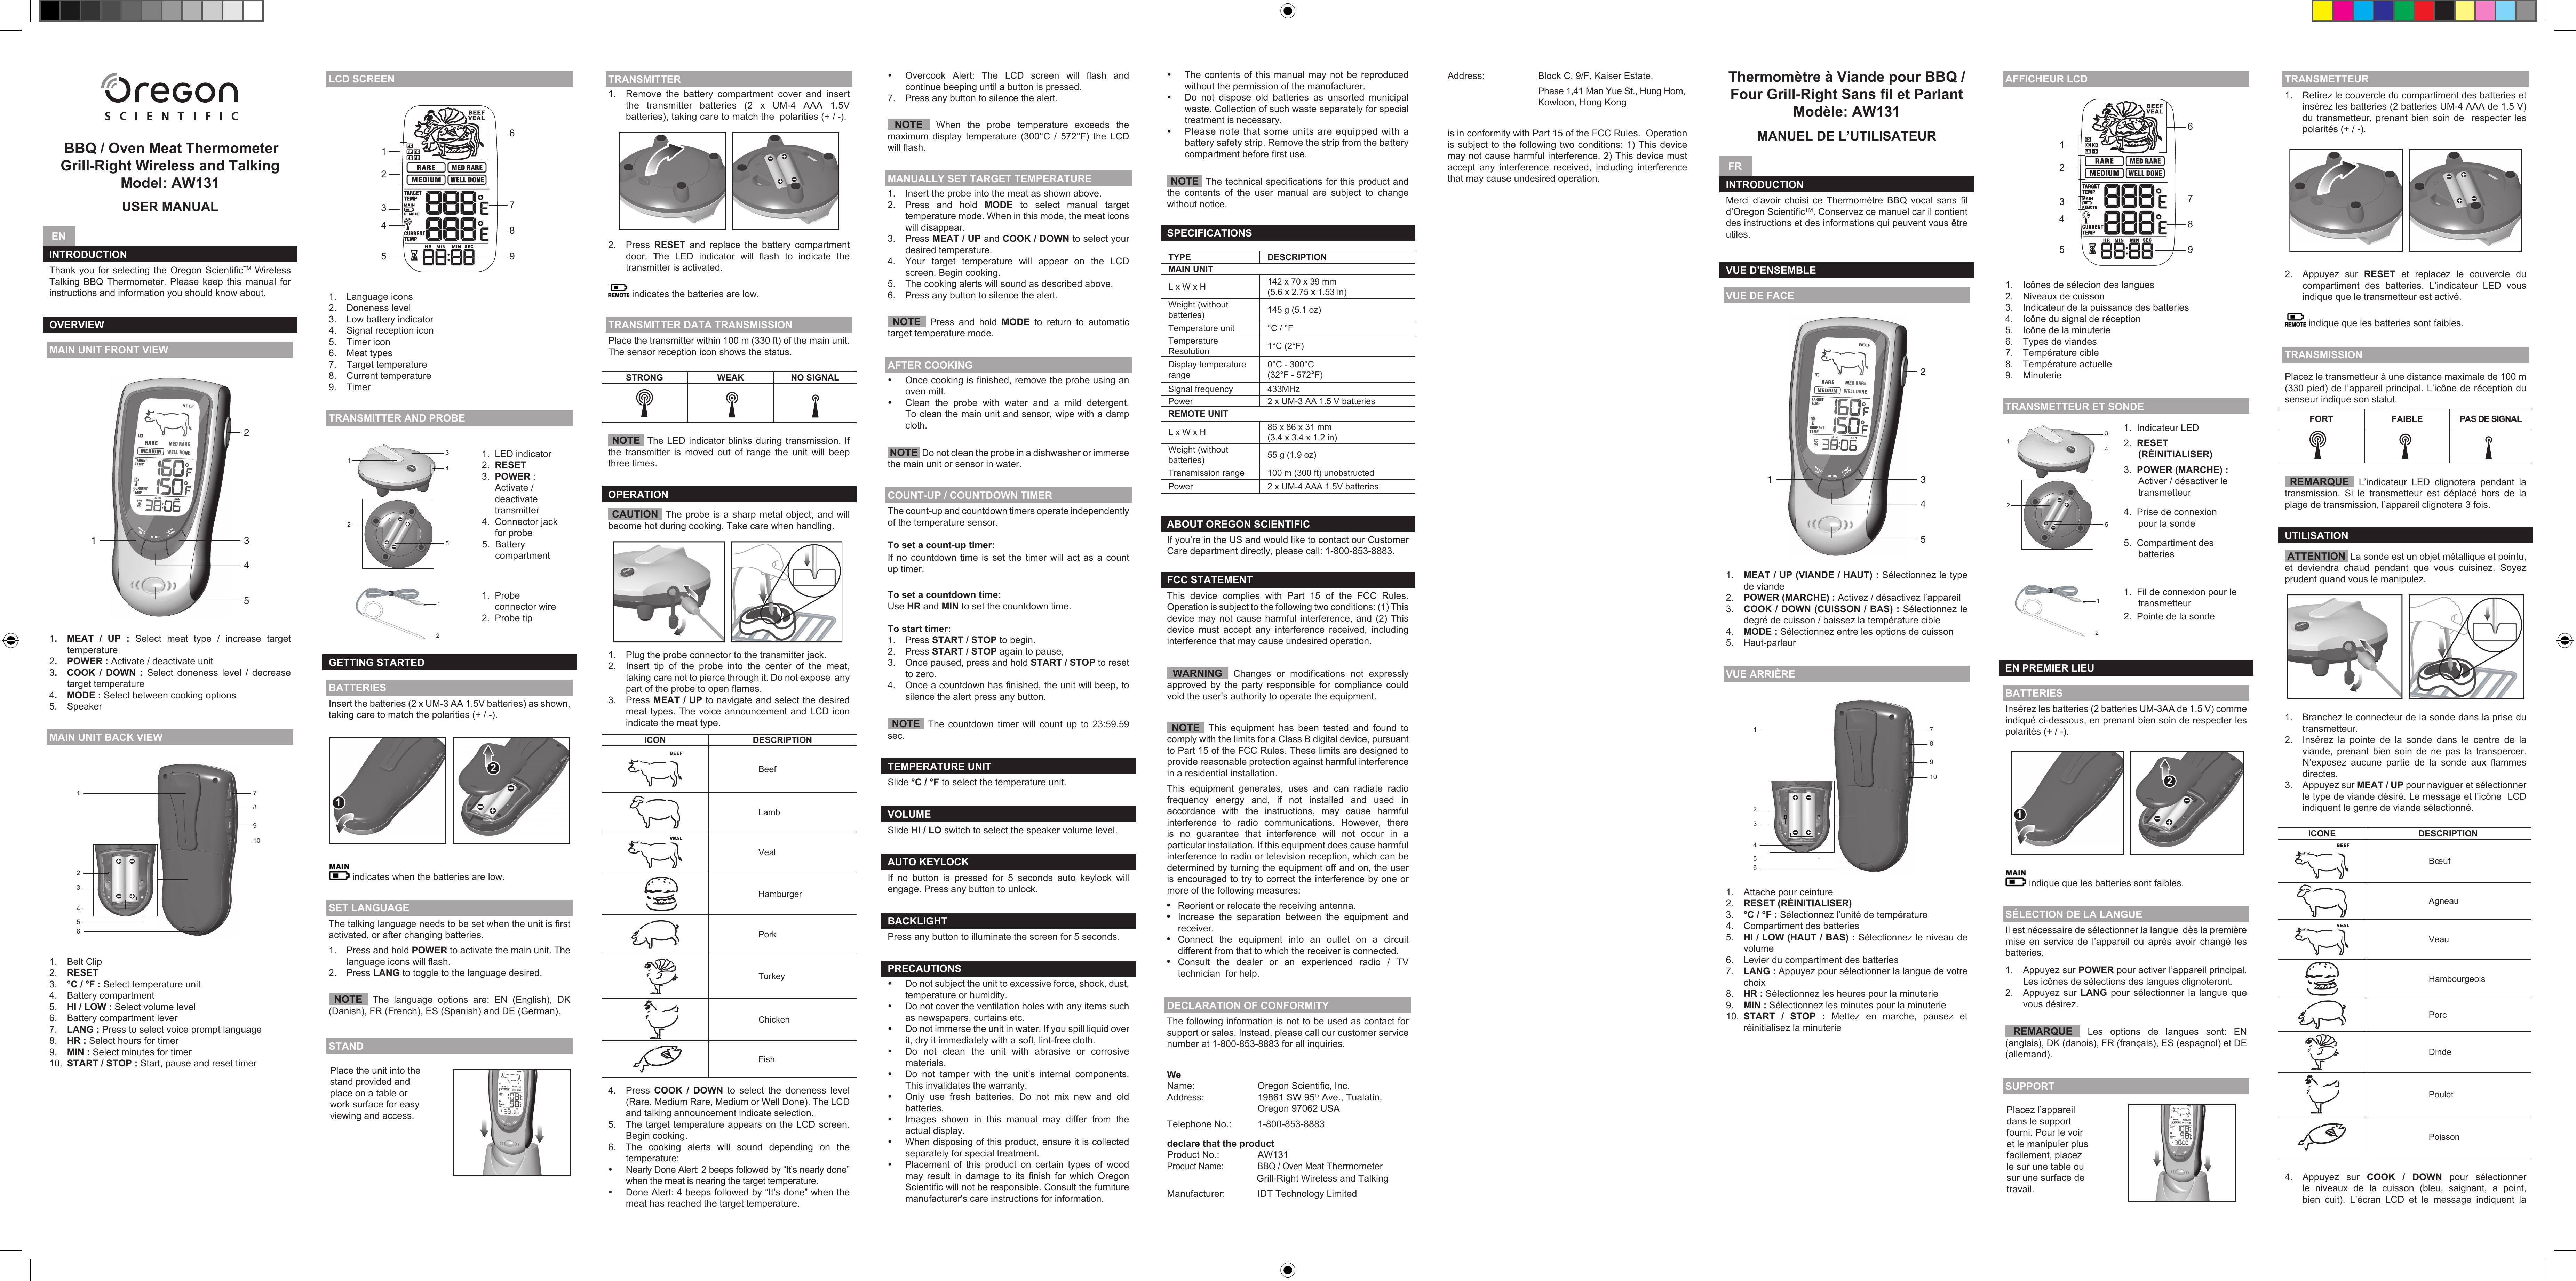 Oregon Scientific AW131 Grill Accessory User Manual